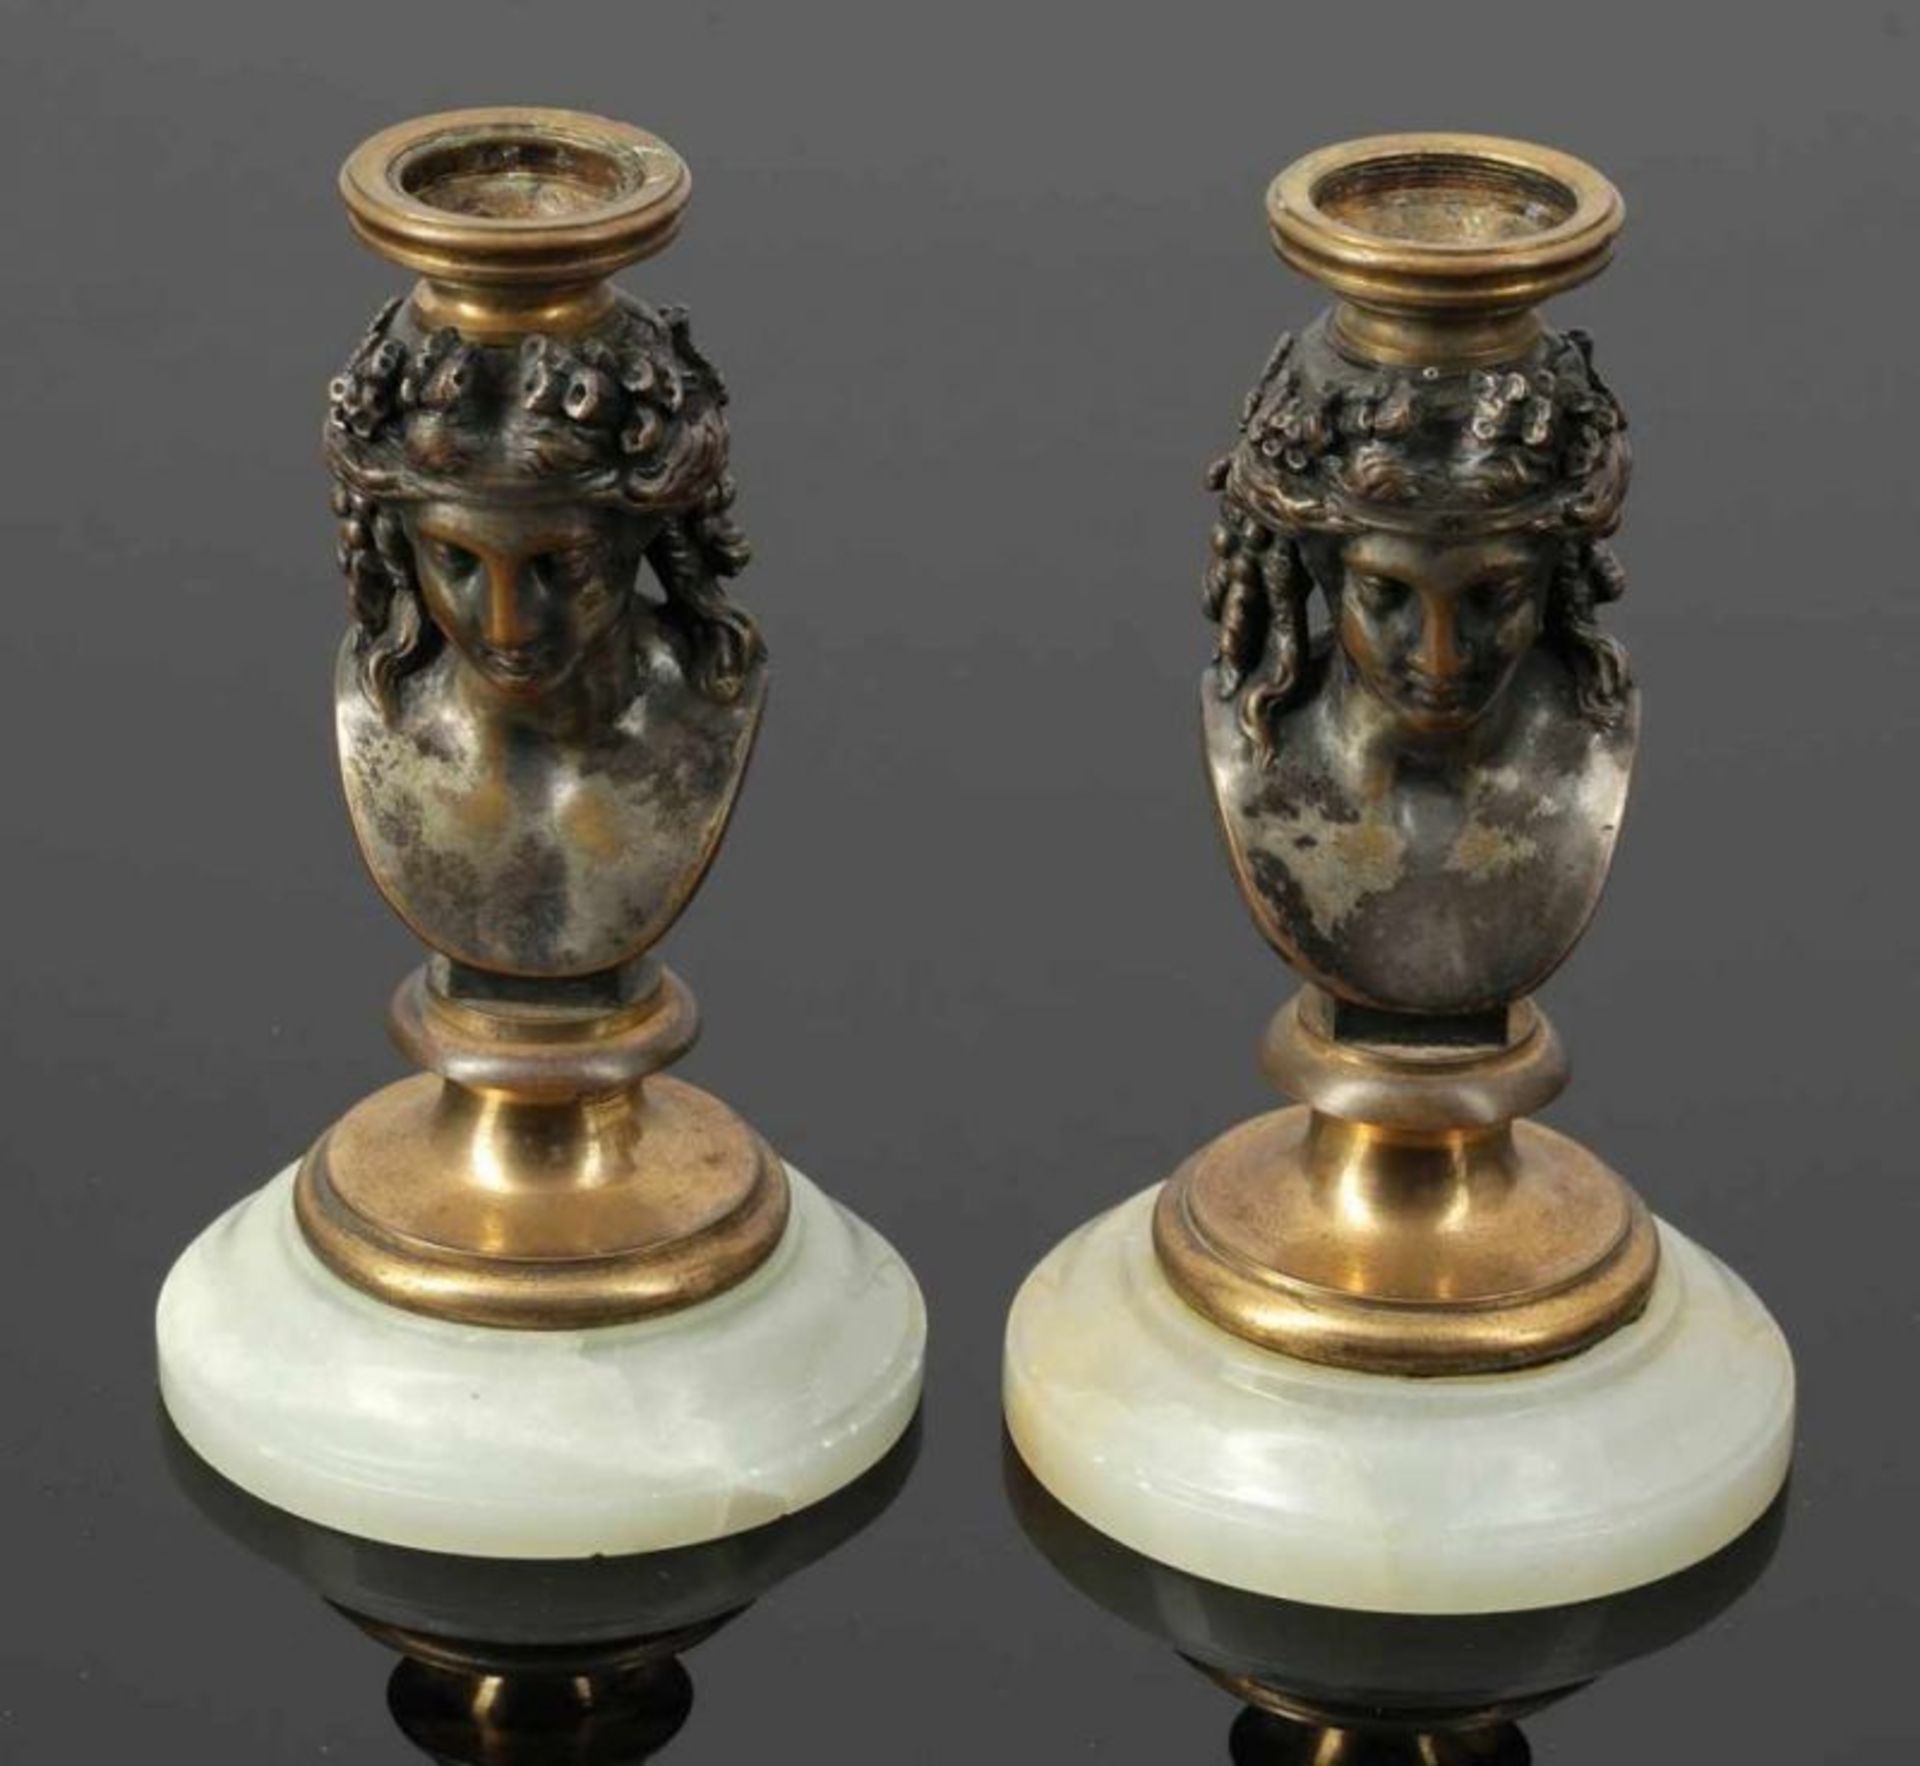 Leuchterpaar Pair of Candleholder 19. Jahrhundert. Messing. Versilbert. Marmorstand. H. 16,5 cm. - Bild 2 aus 2